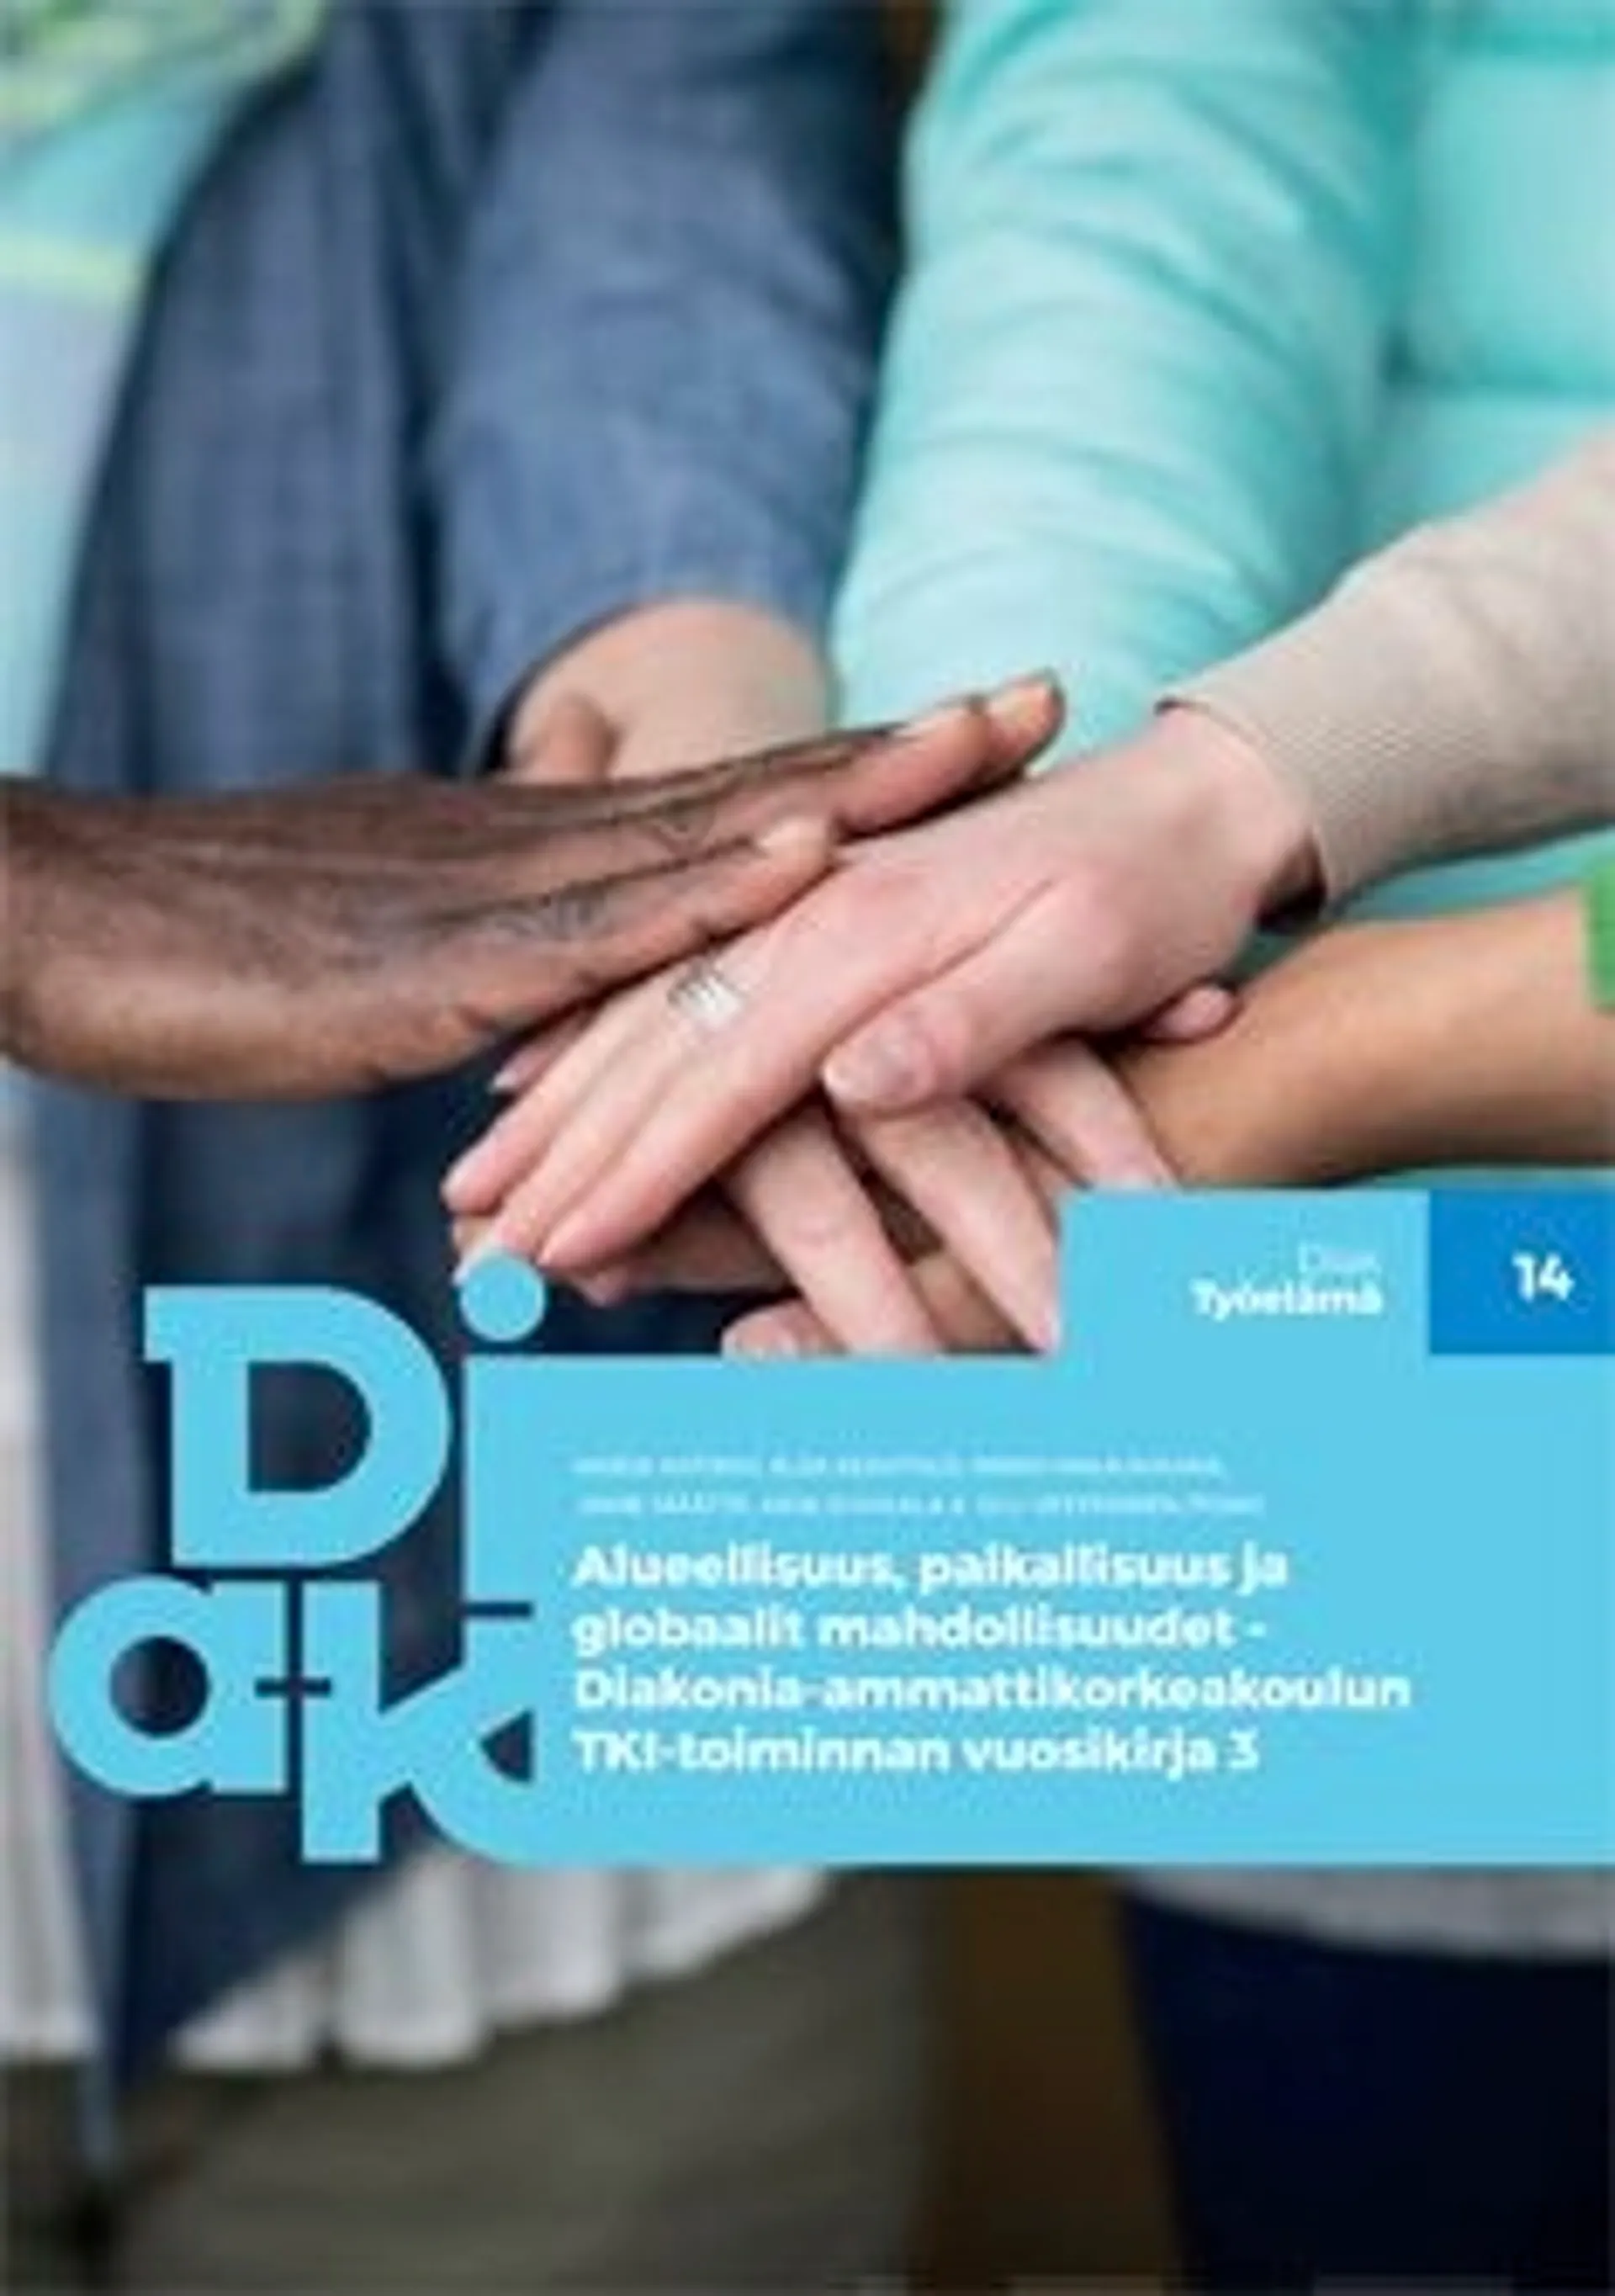 Alueellisuus, paikallisuus ja globaalit mahdollisuudet - Diakonia-ammattikorkeakoulun TKI-toiminnan vuosikirja 3